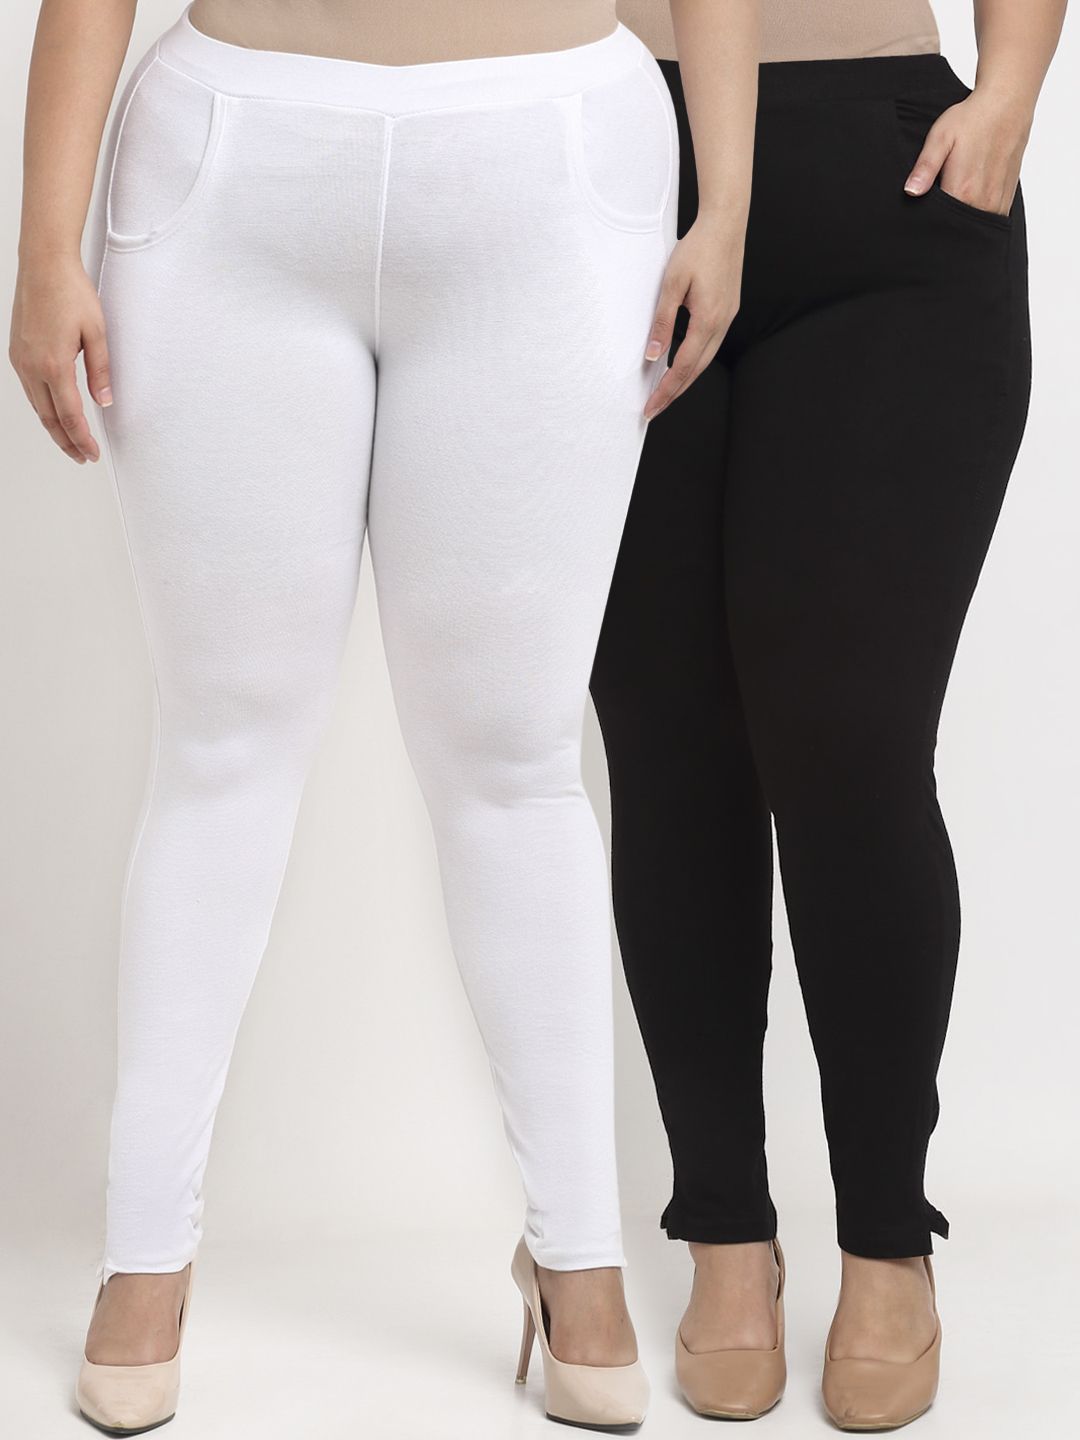 TAG 7 PLUS Women White & Black Set of 2 Plus Size Leggings Price in India